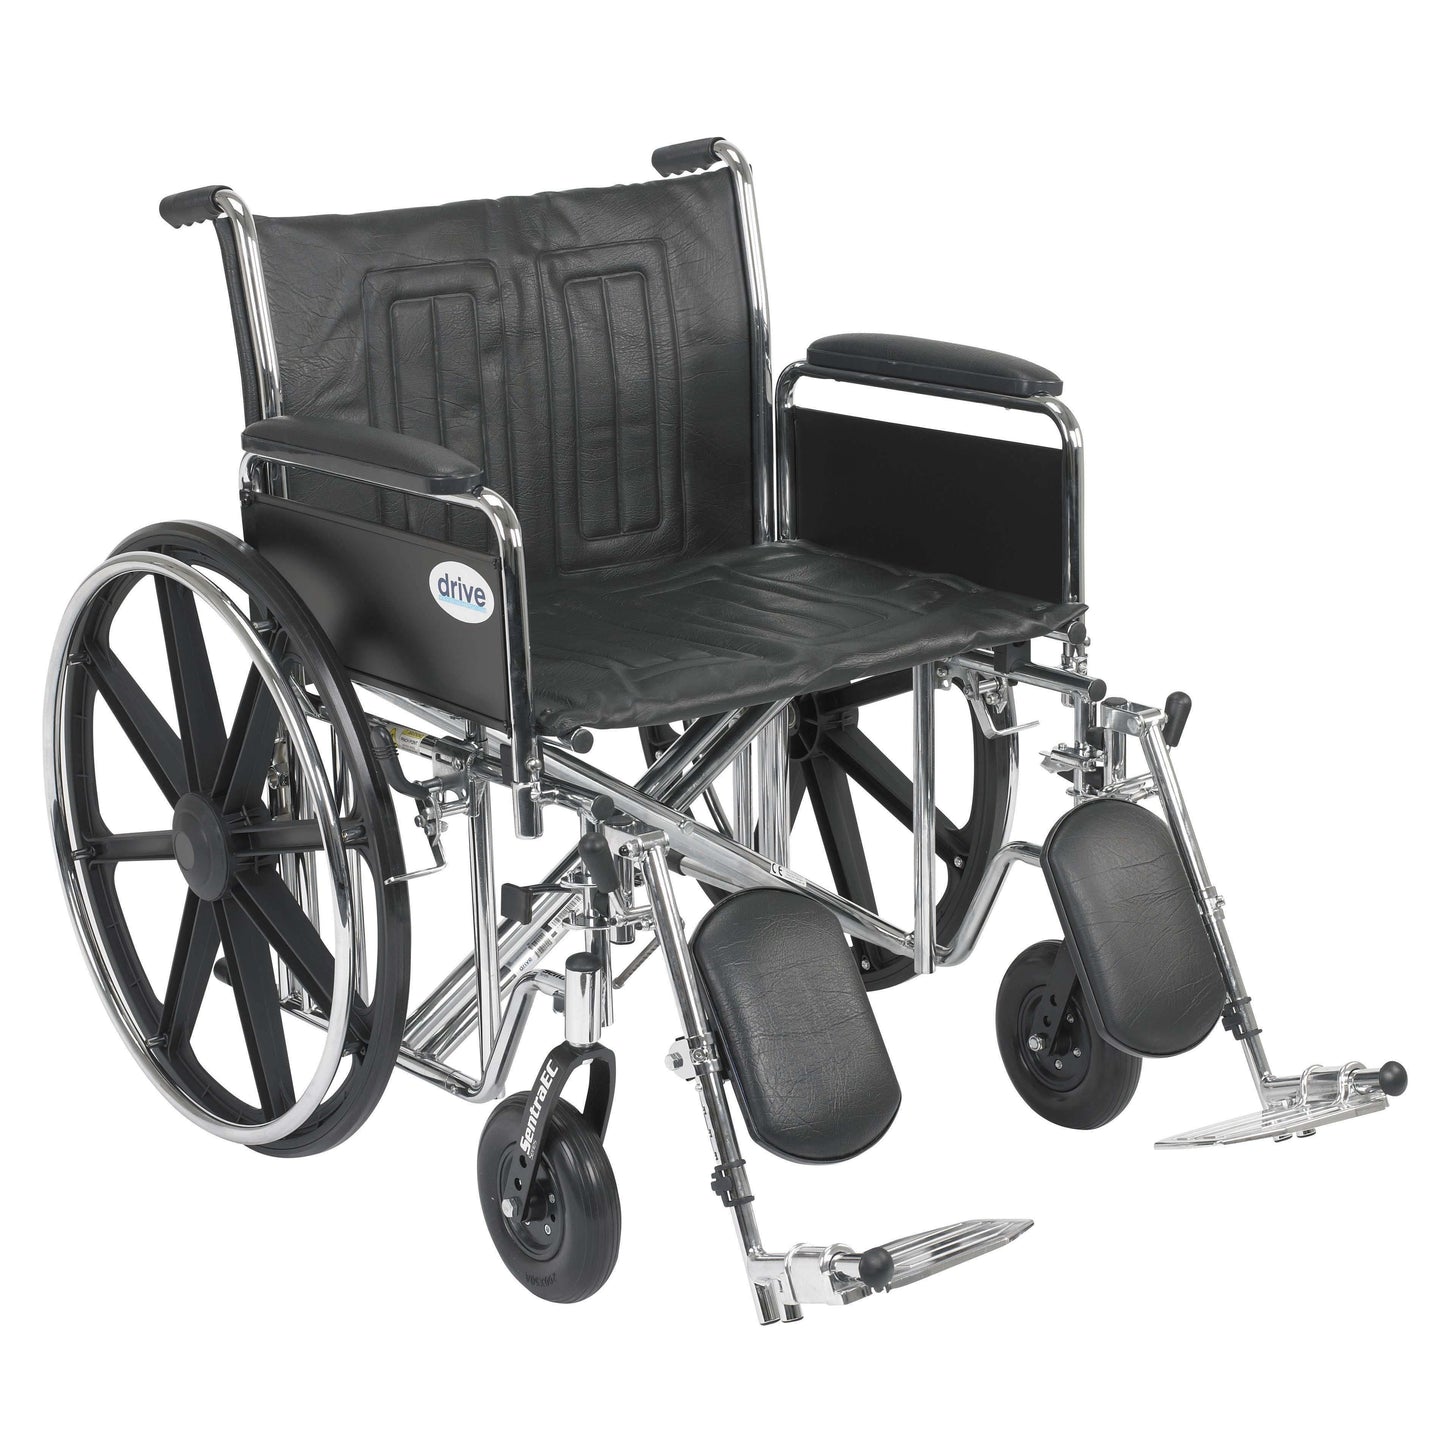 Drive std24ecdfa-elr Sentra EC Heavy Duty 24" Wheelchair